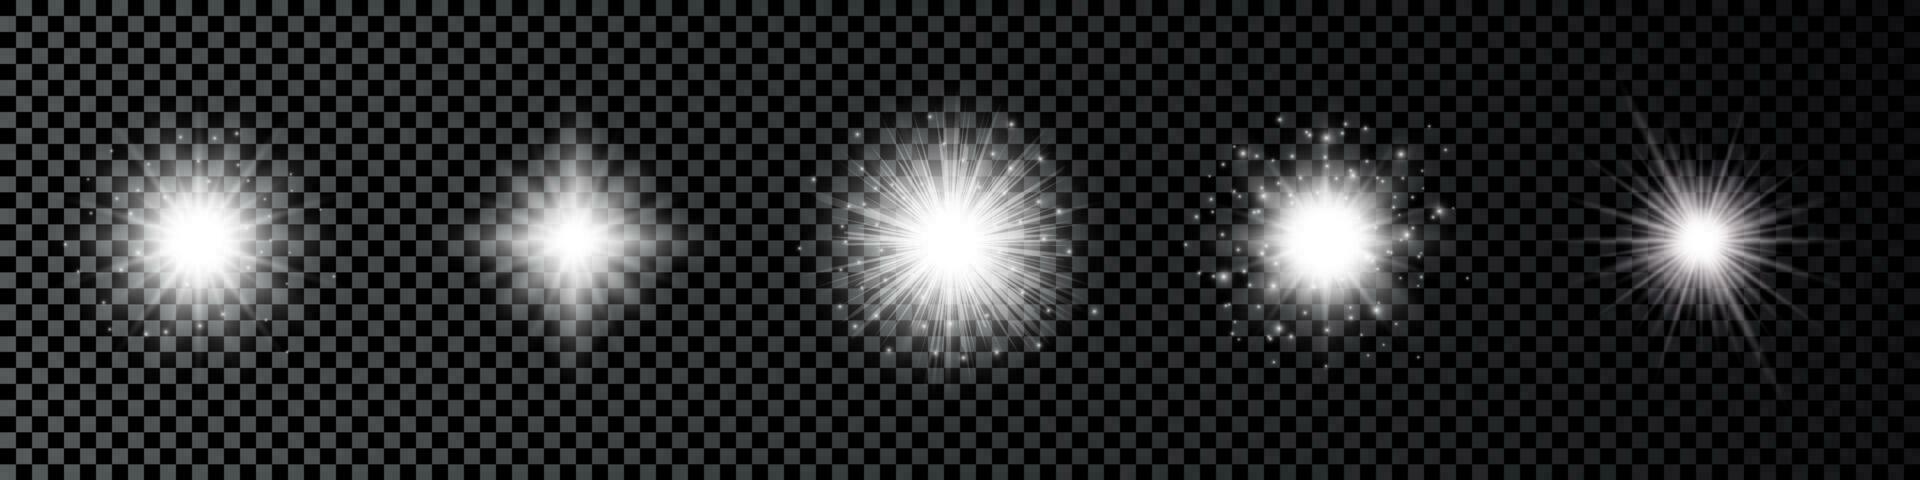 ljus effekt av lins bloss. uppsättning av fem vit lysande lampor starburst effekter med pärlar vektor